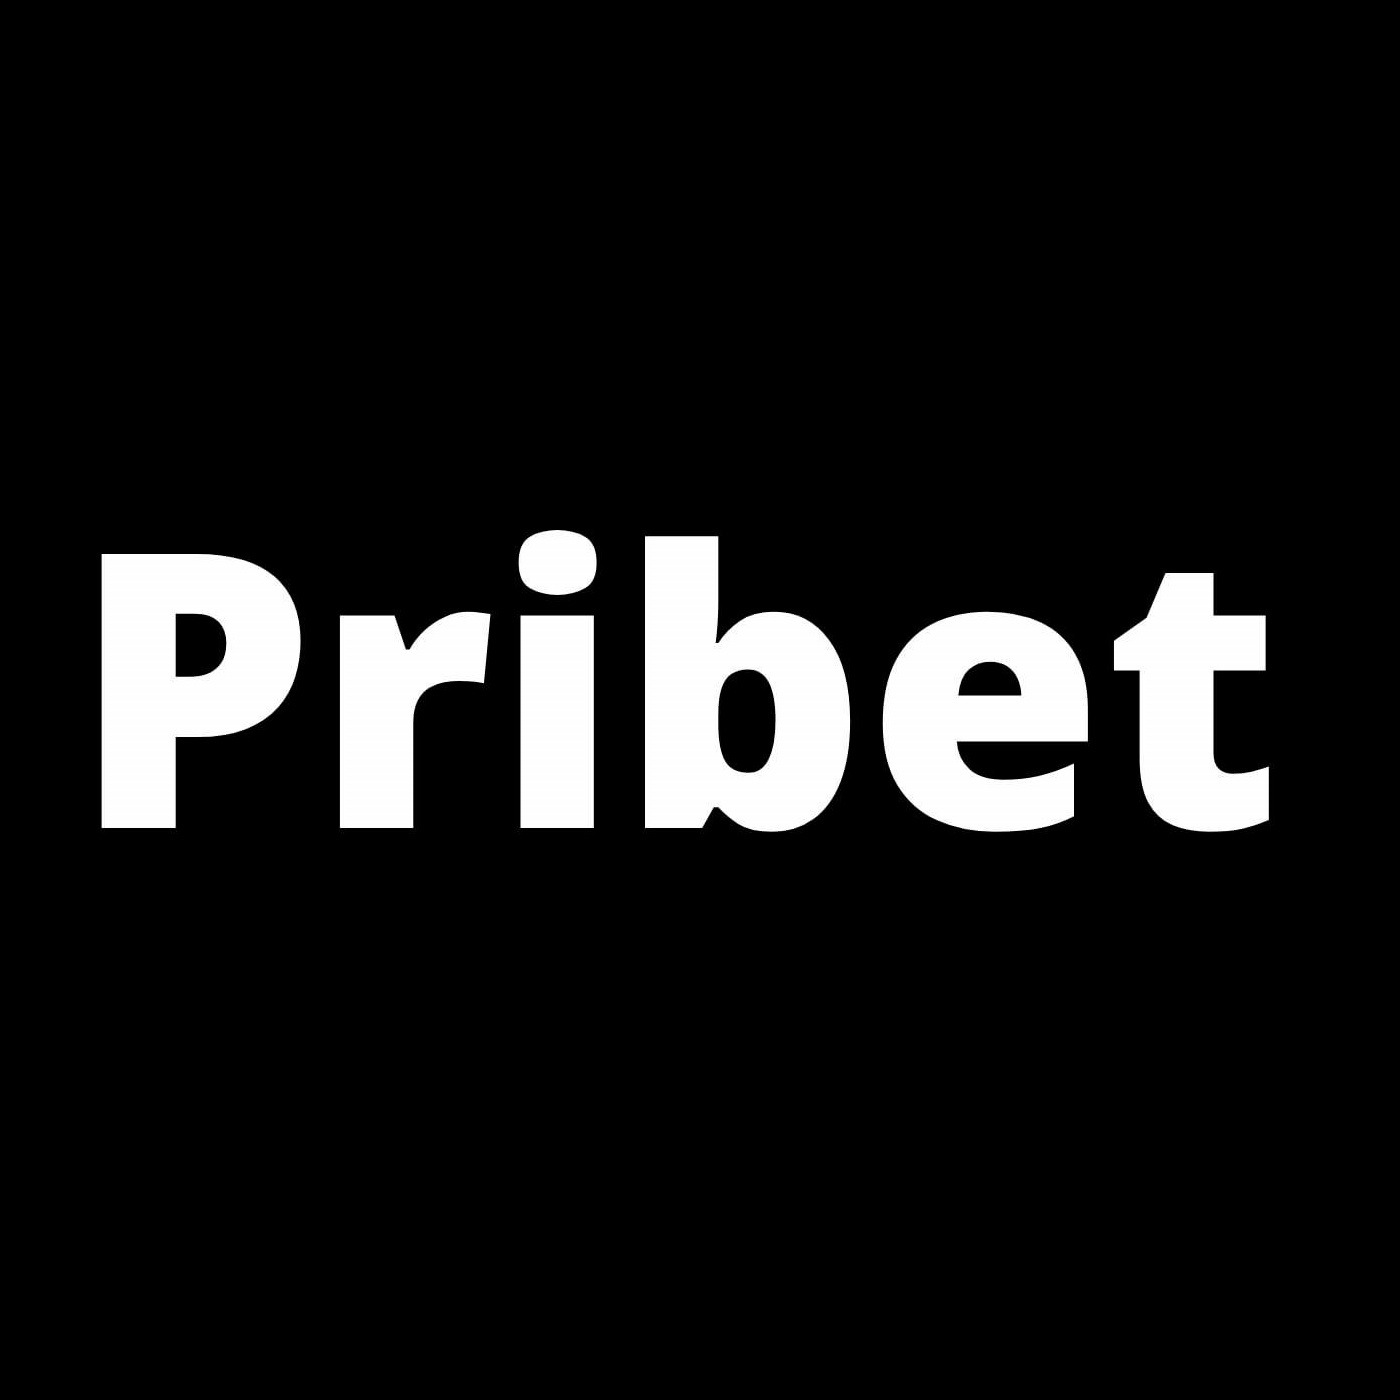 Private: Pribet